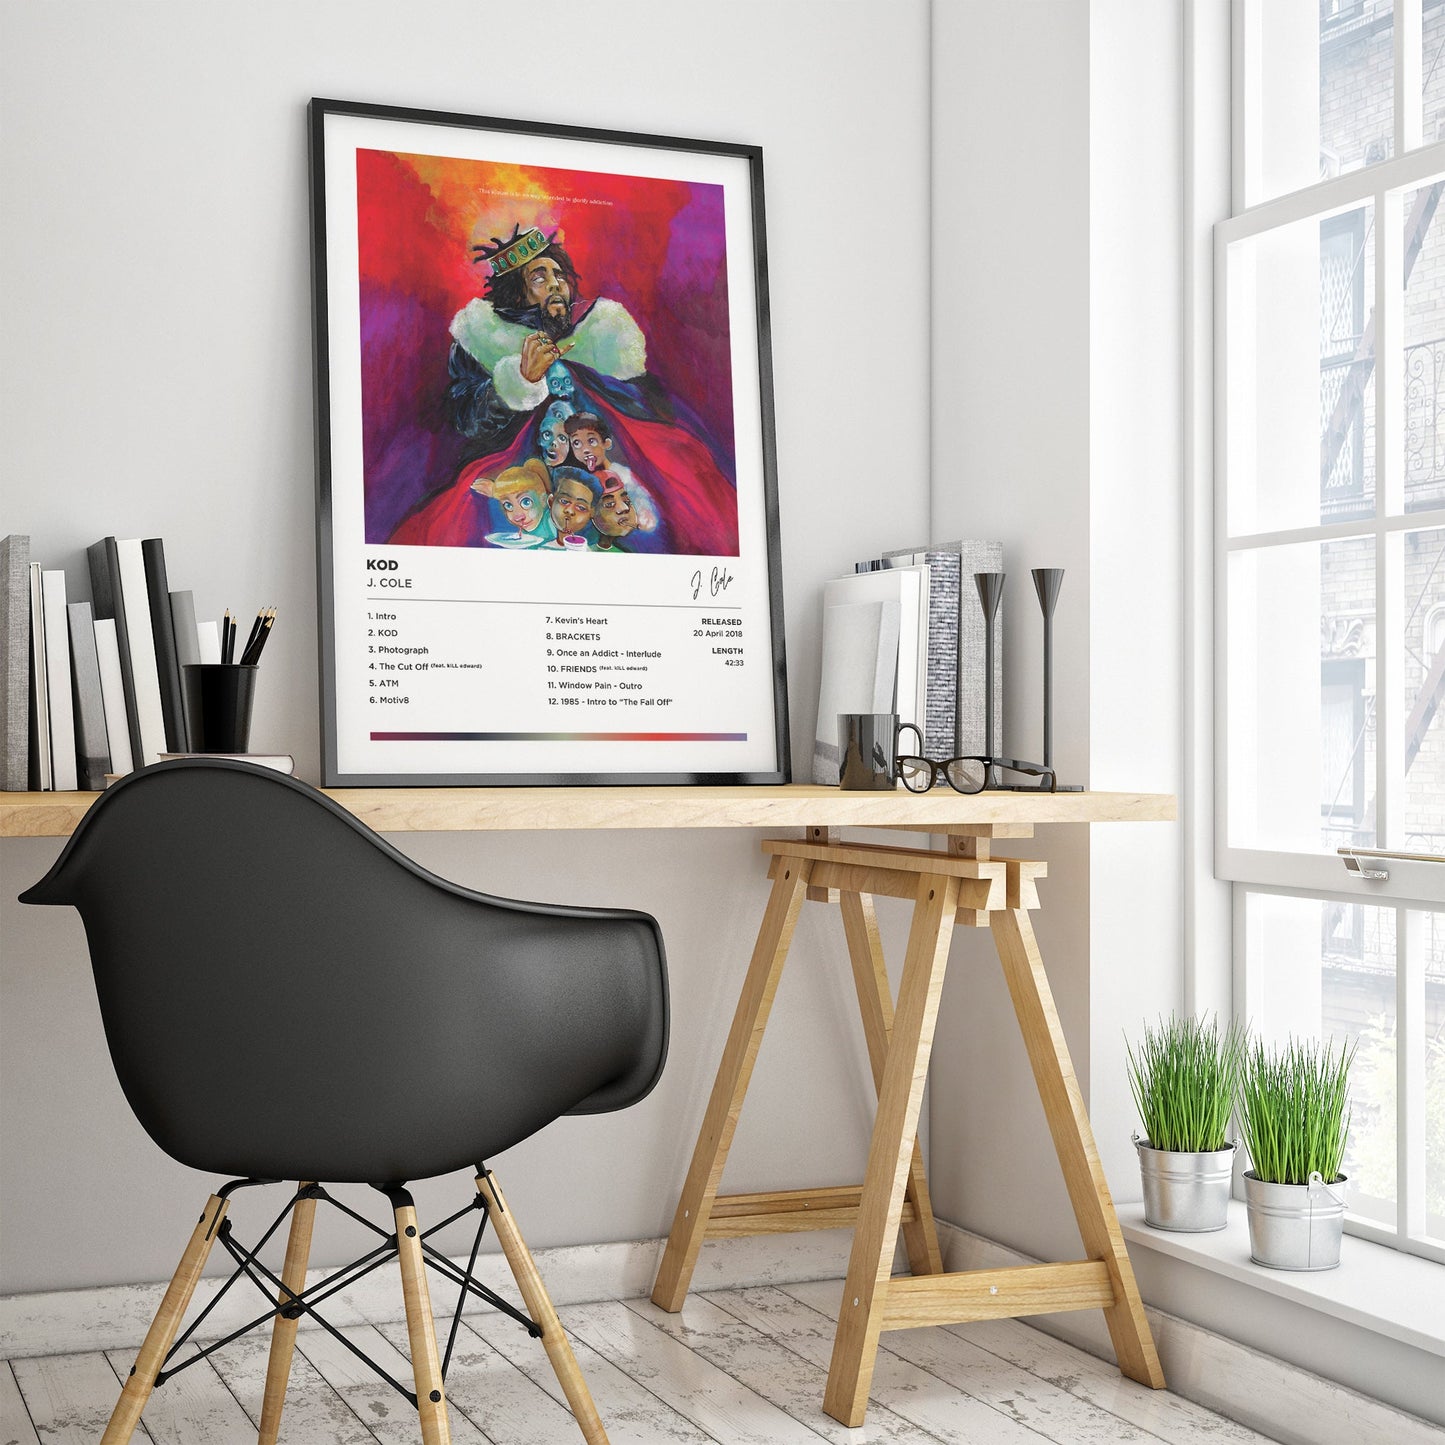 J Cole - KOD Framed Poster Print | Polaroid Style | Album Cover Artwork